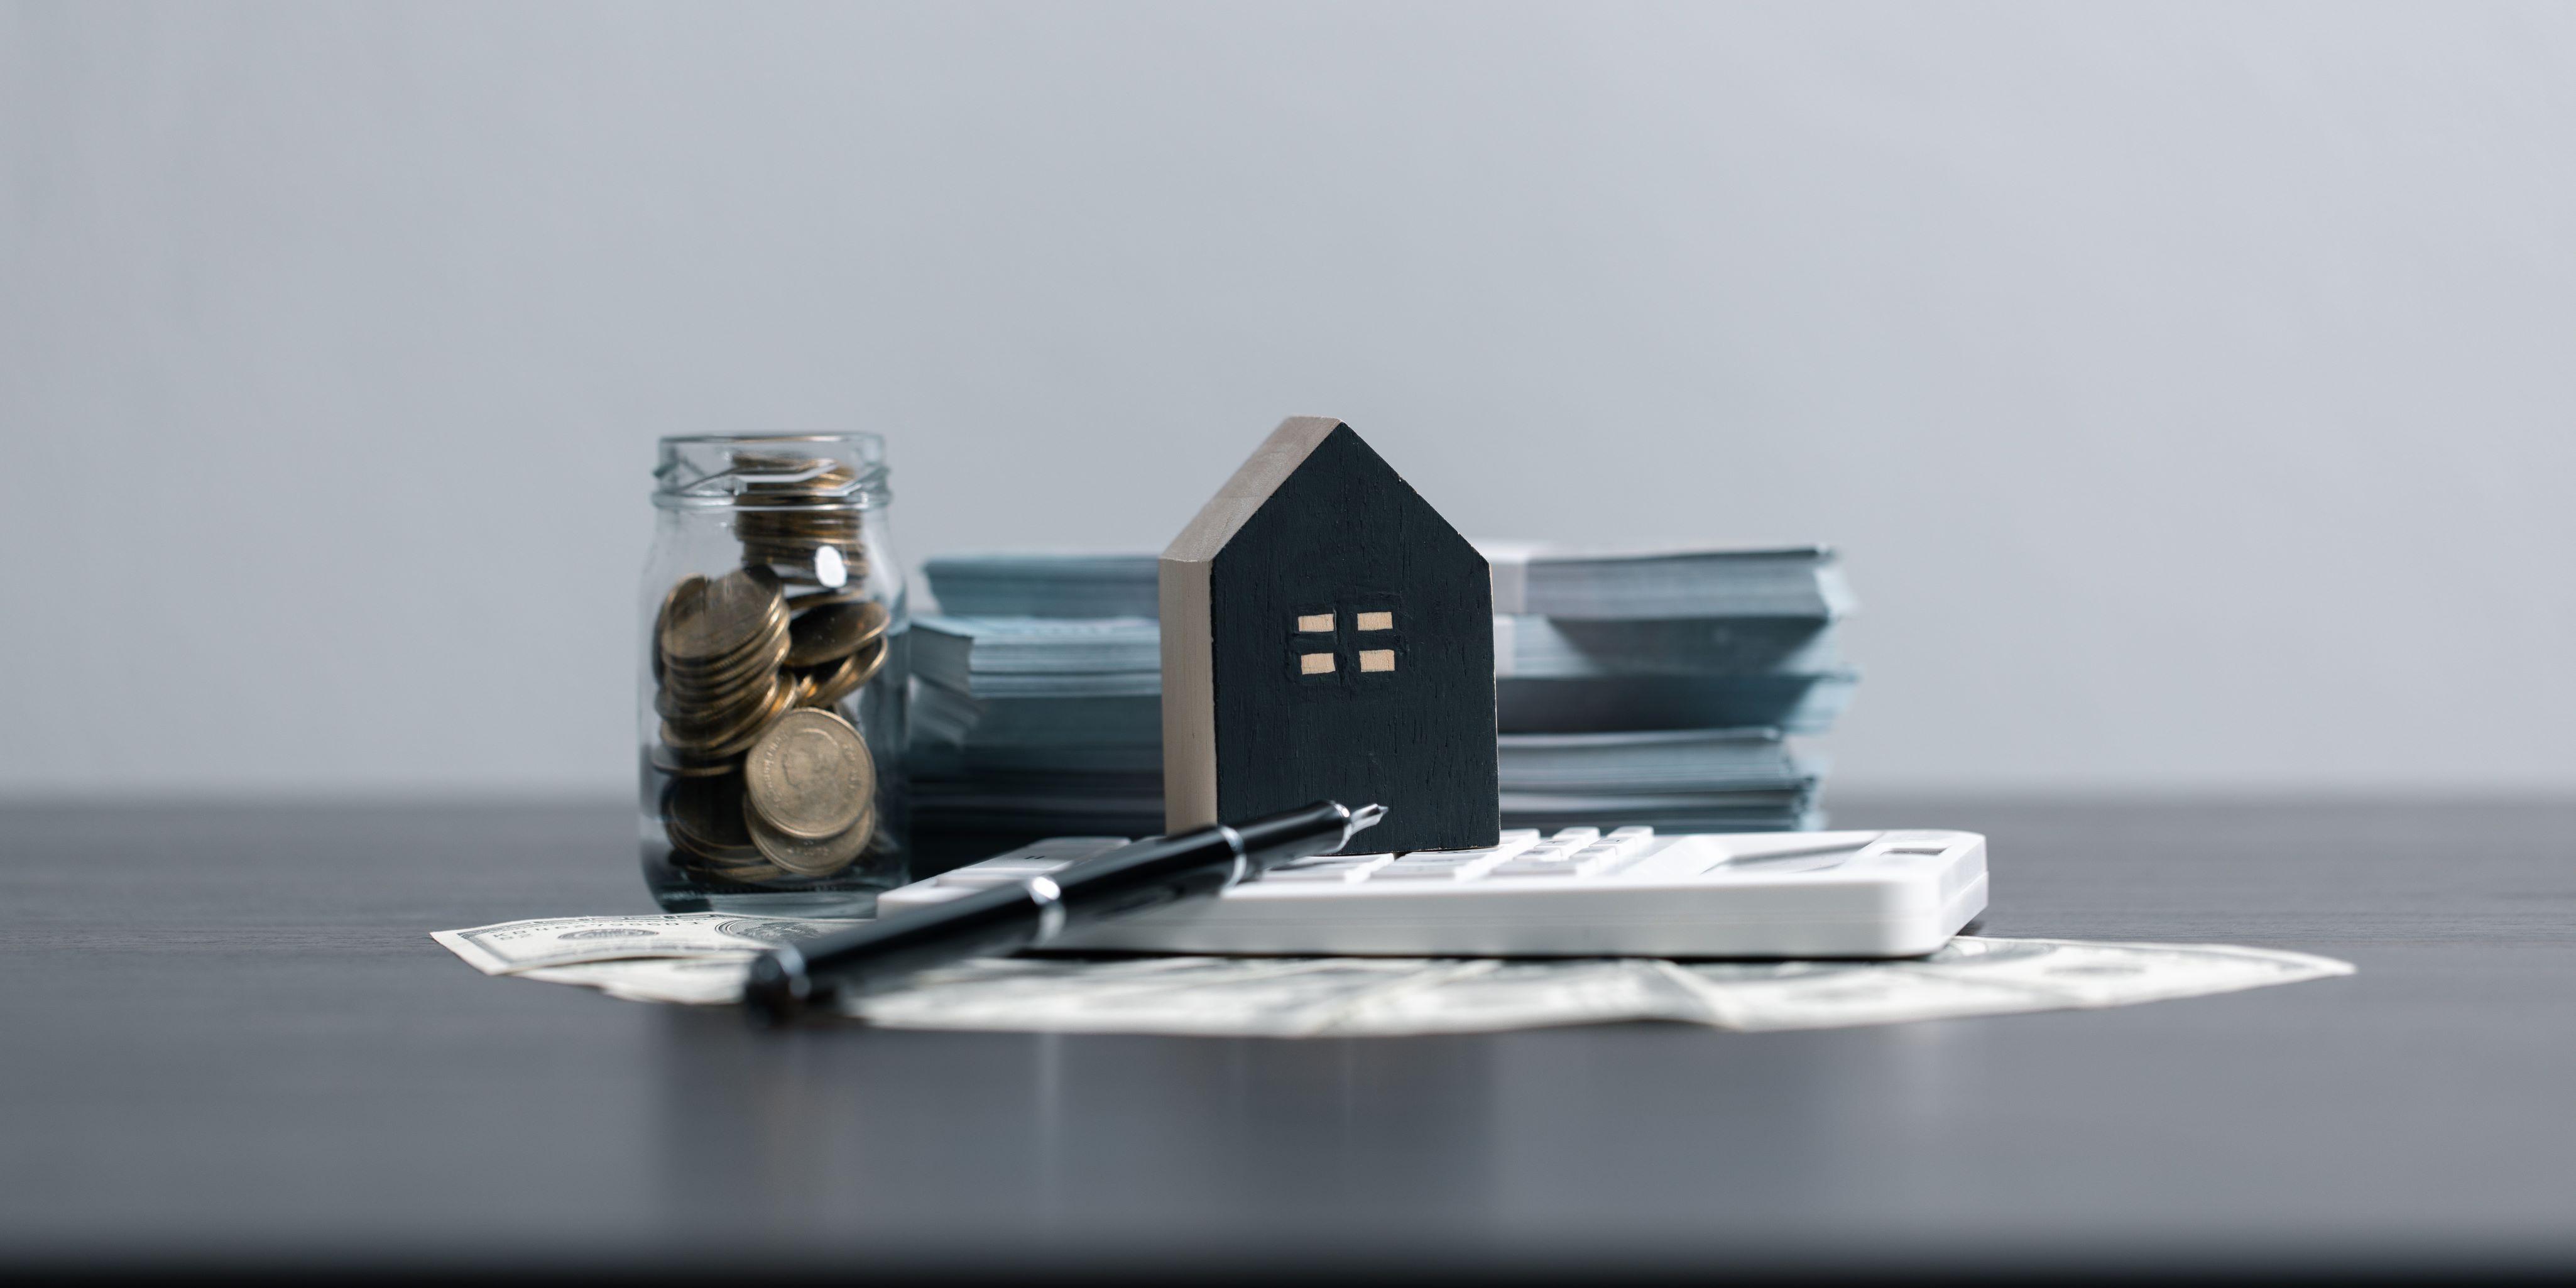 Papeles de préstamo hipotecario, un frasco de dinero y una pequeña casita pintada de negro en la fachada. Calculadora, y papeles.